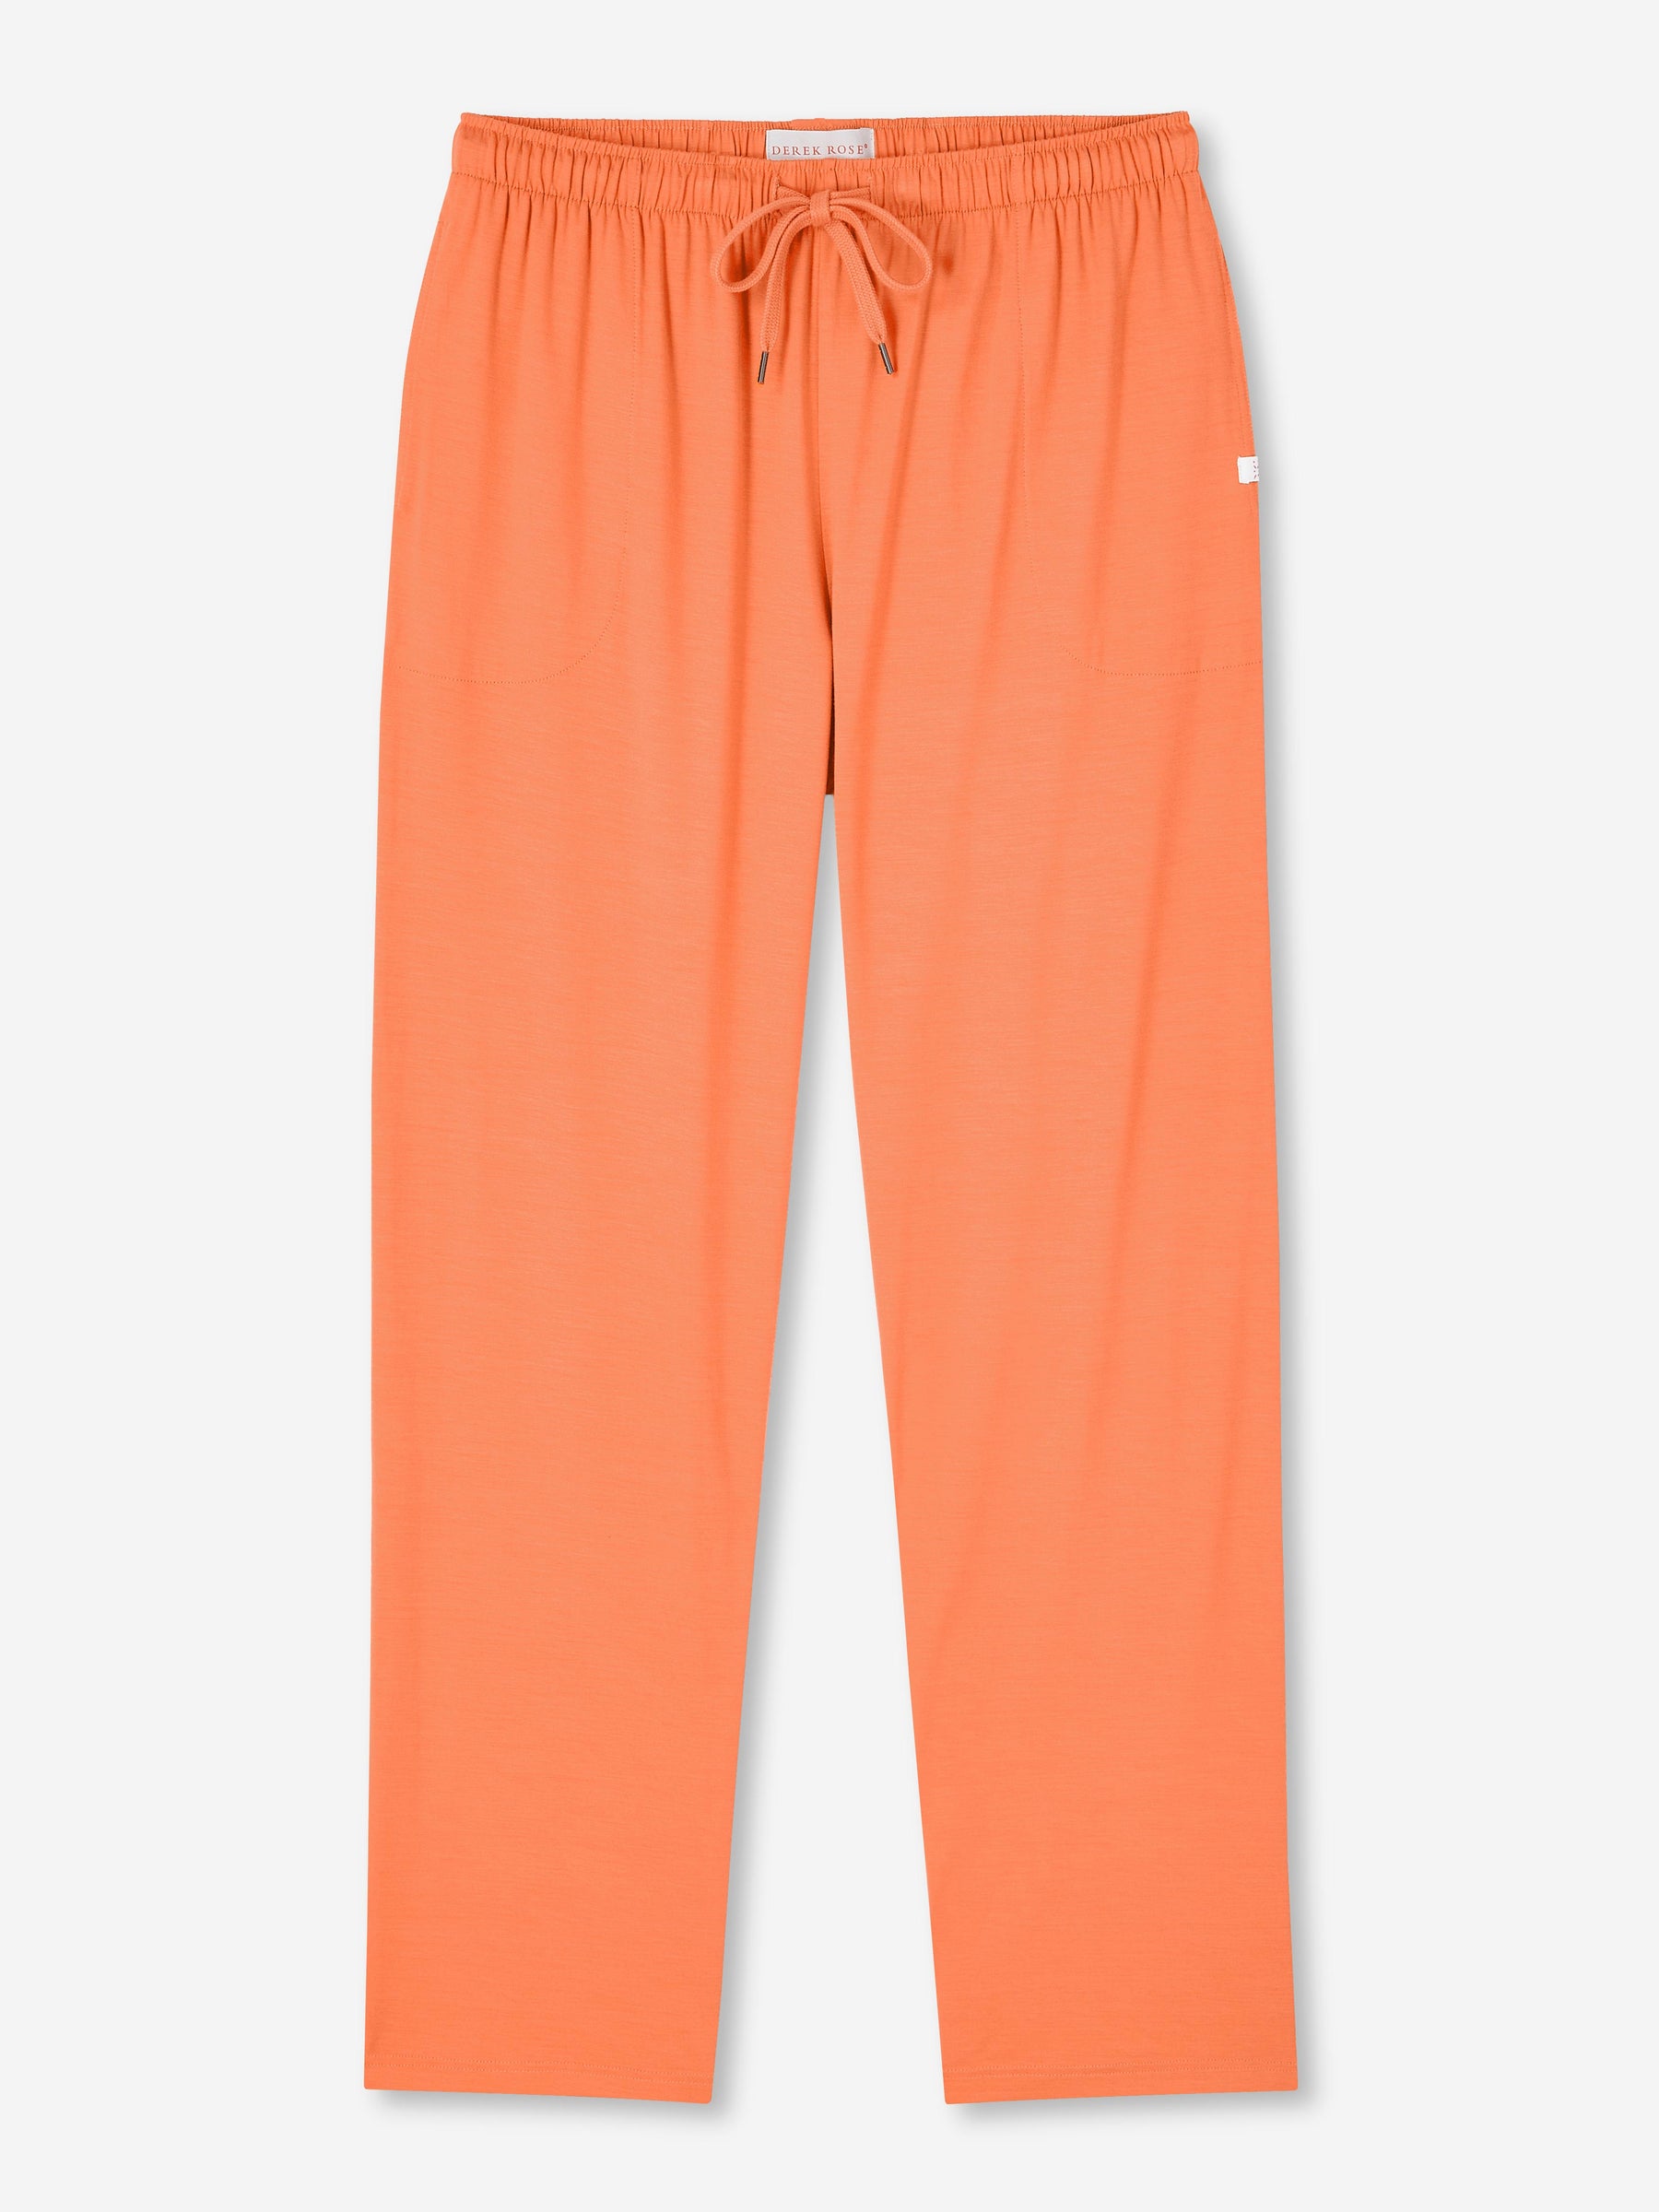 Men's Lounge Trousers Basel Micro Modal Stretch Orange